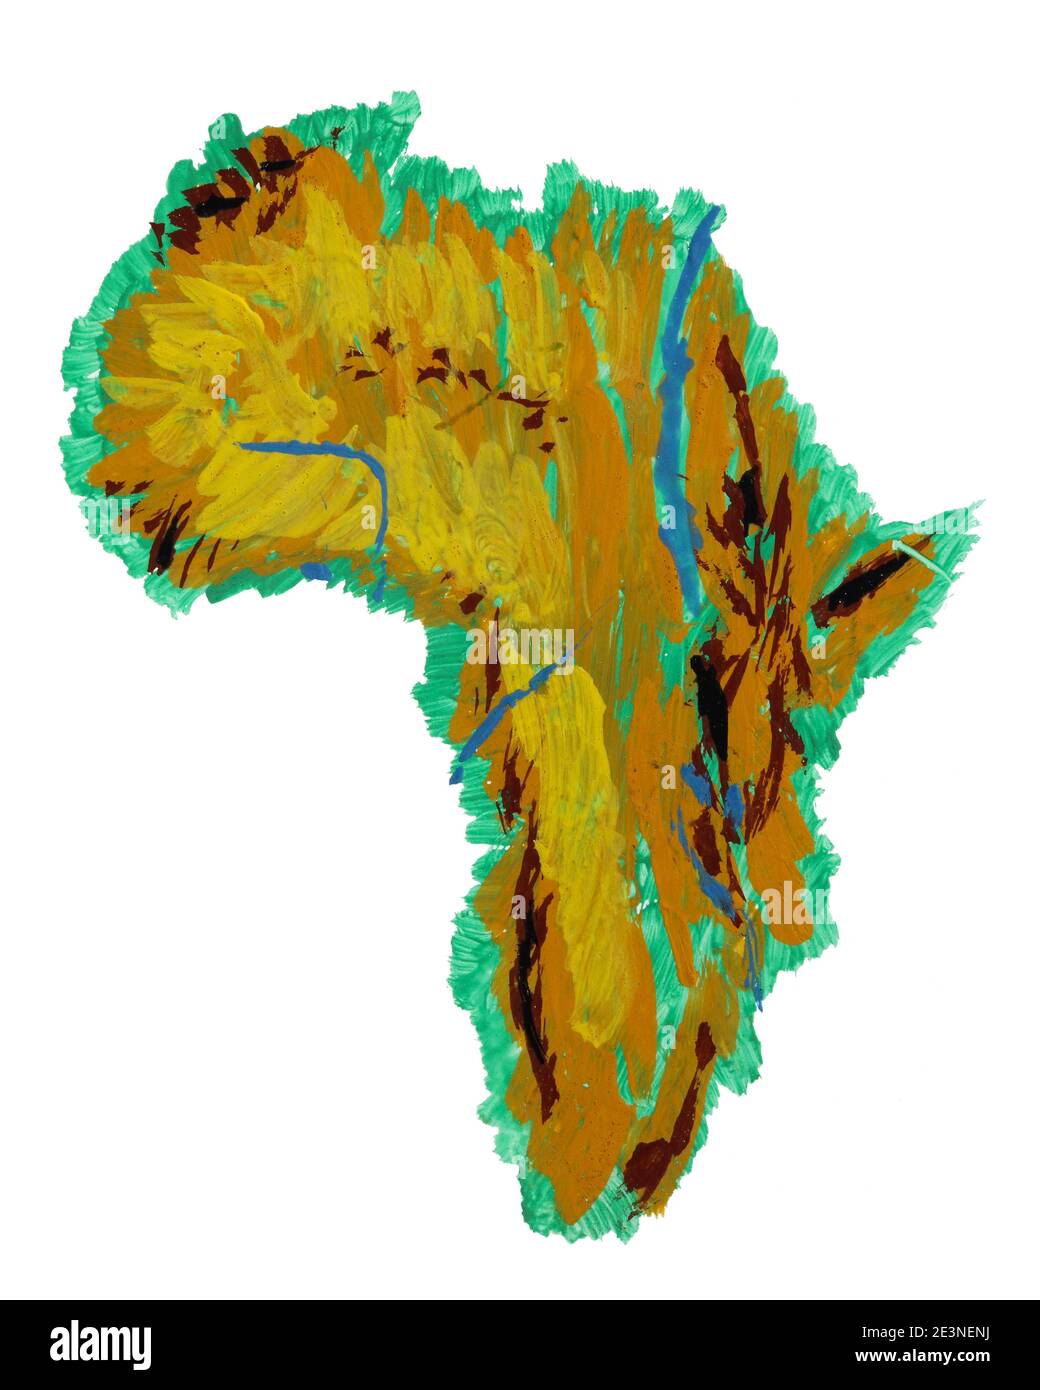 Image abstraite du continent africain peinte à la gouache. Illustration isolée Banque D'Images